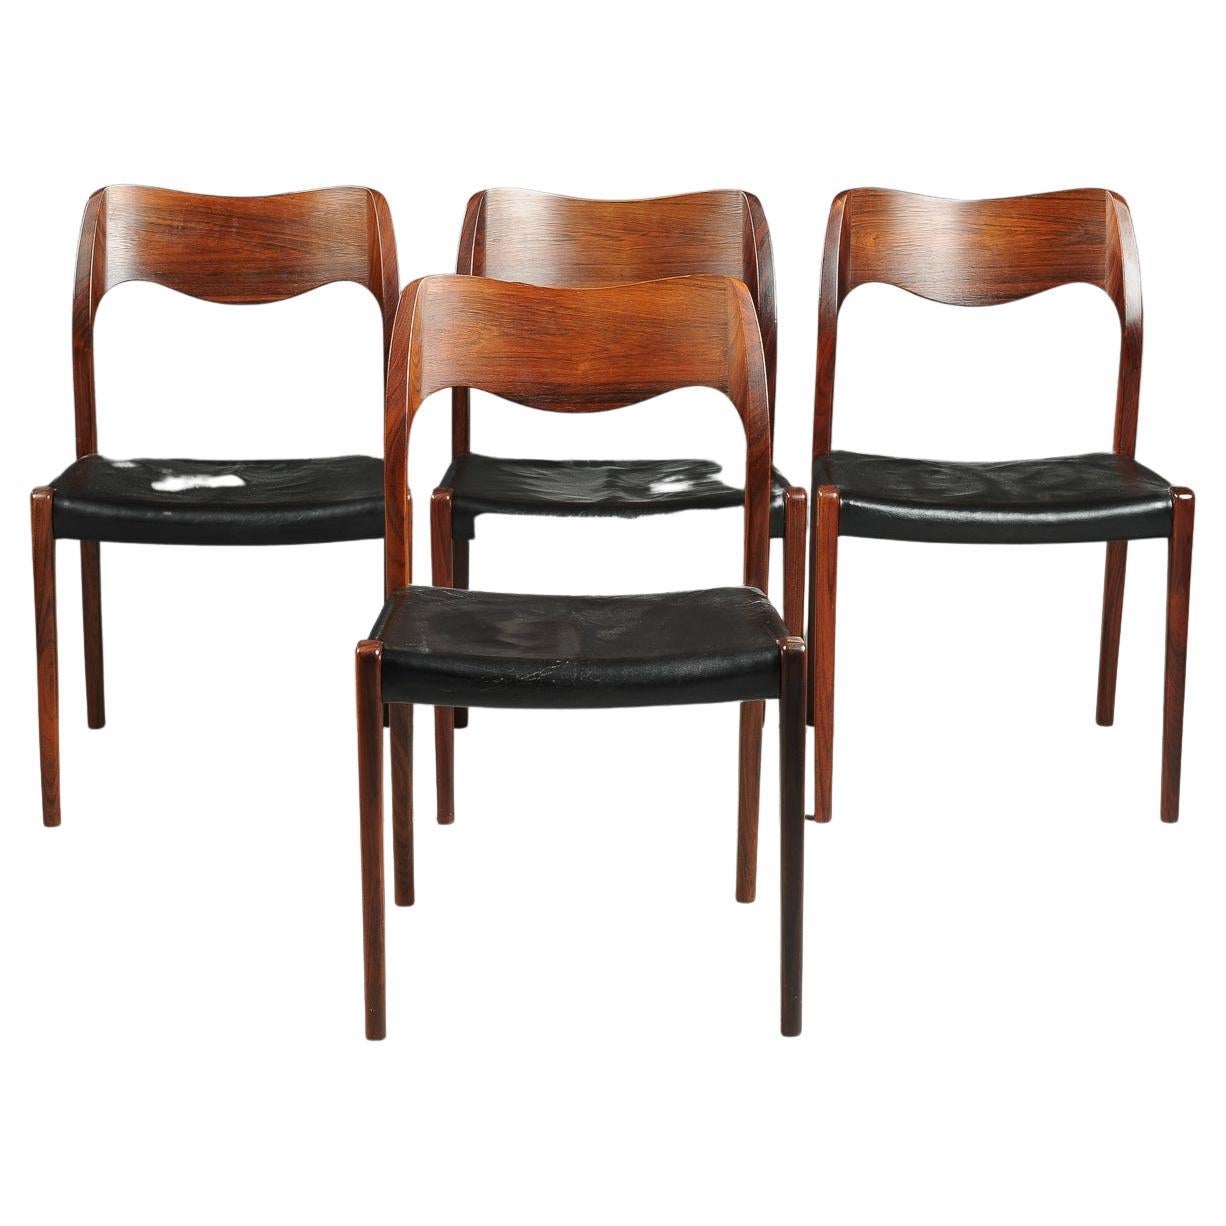 Abgebildet ist ein Satz von vier Esszimmerstühlen, die 1951 von Niels Otto Moller entworfen und vor 1969 von JL Moller hergestellt wurden, wie das Label mit der runden Scheibe zeigt. Dieses Angebot umfasst den abgebildeten Tisch, aber die Stühle